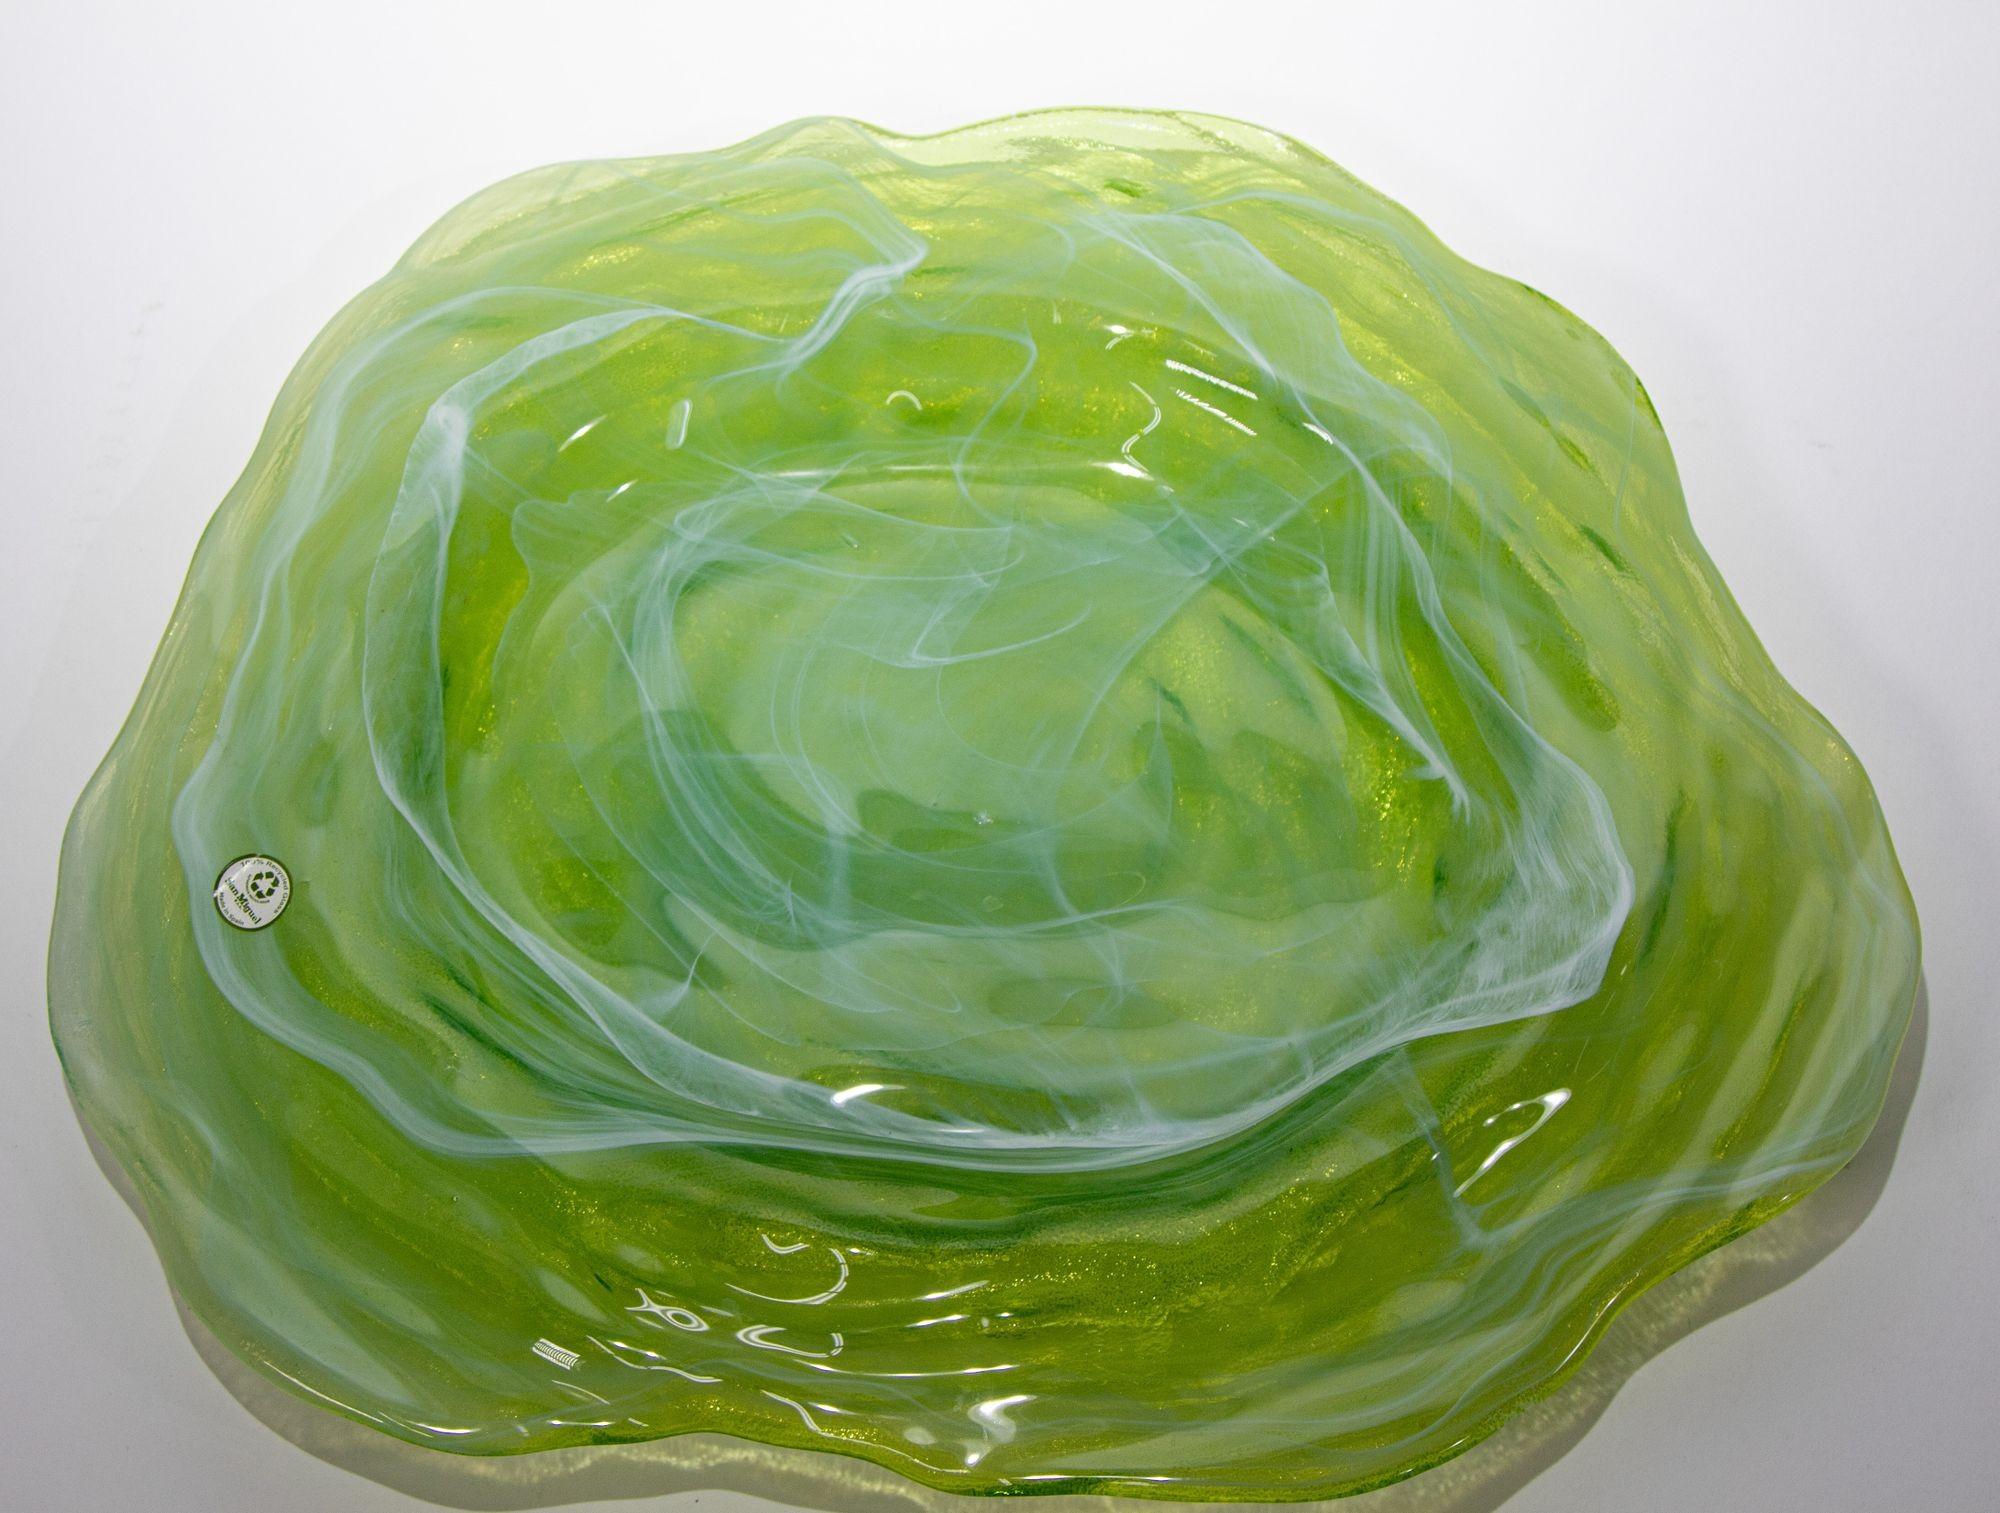 Magnifique plateau en verre d'art vert fabriqué en Espagne.
Bol d'art en verre tourbillonnant vert et blanc fabriqué à la main à partir de verre recyclé, de forme ronde et libre, grande variation de couleurs et multidimensionnel.
Le verre provient